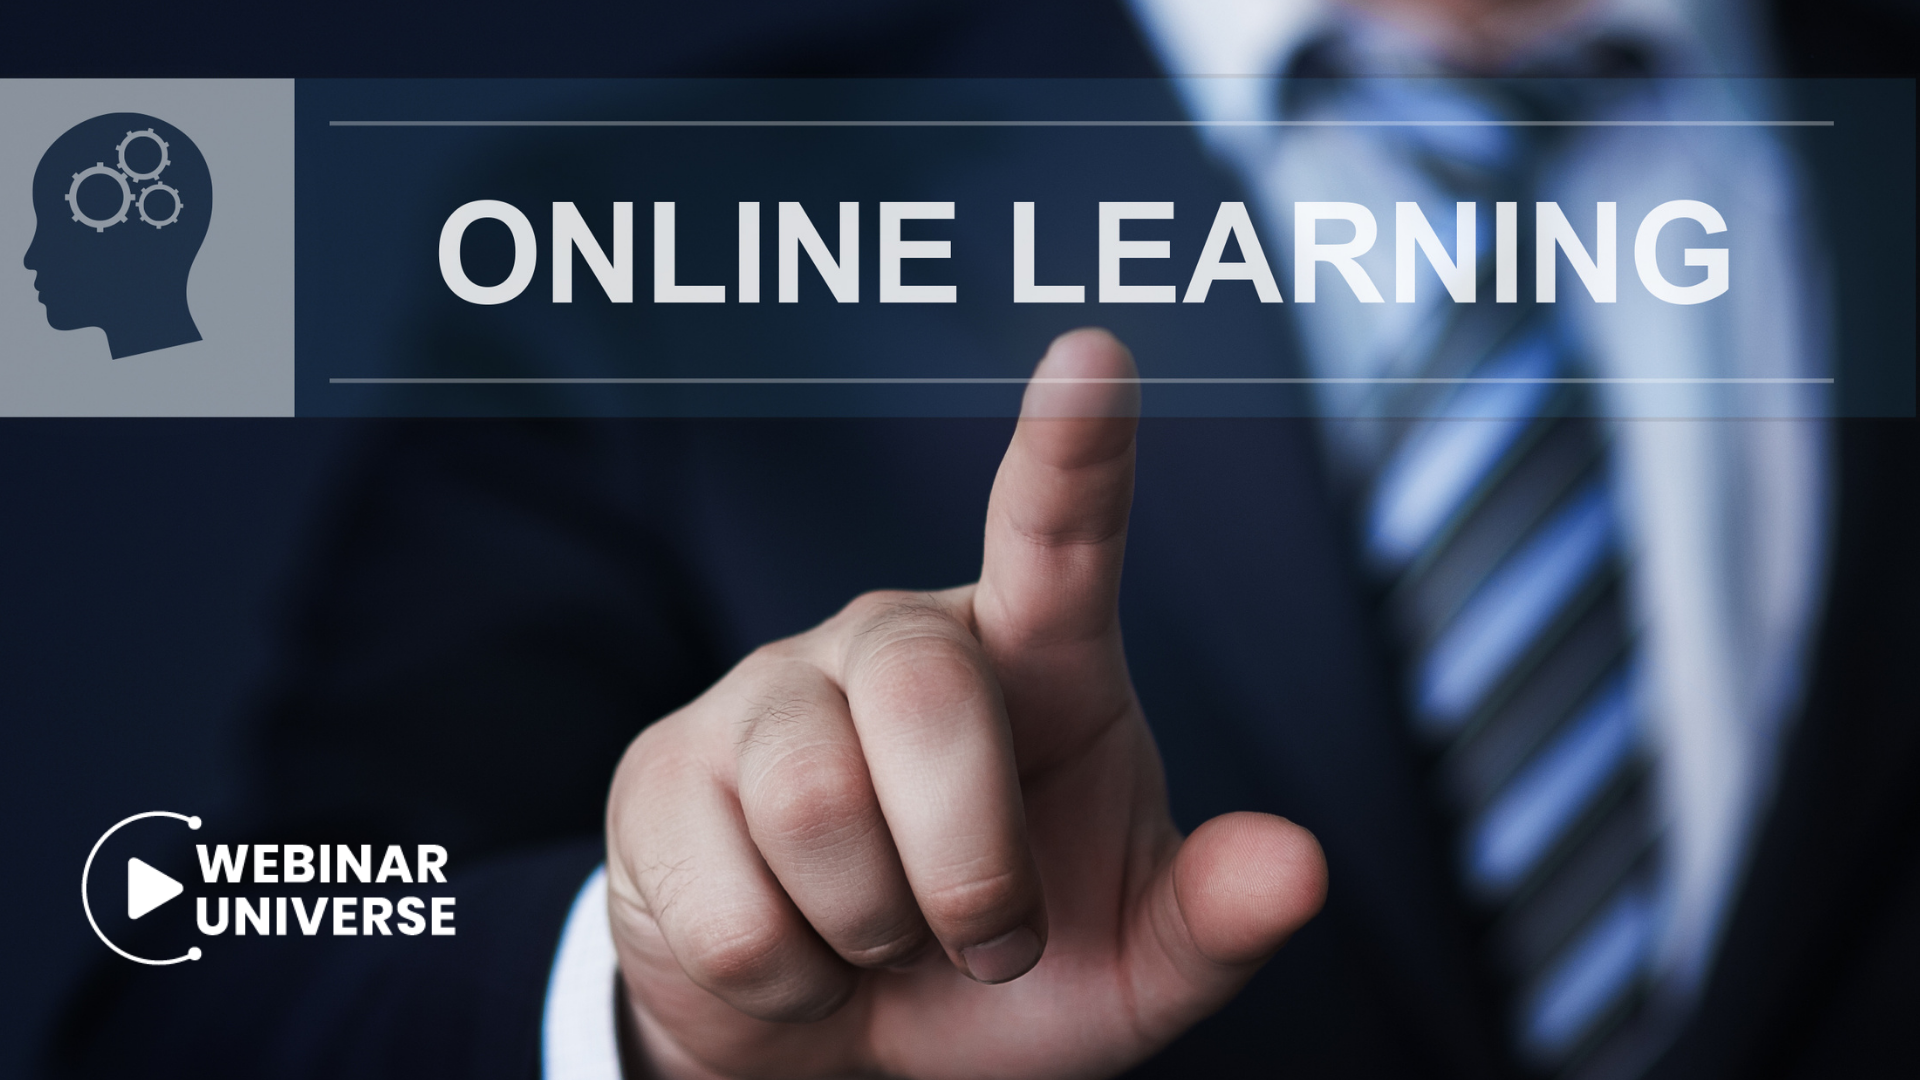 Webinar Universe online learning platform